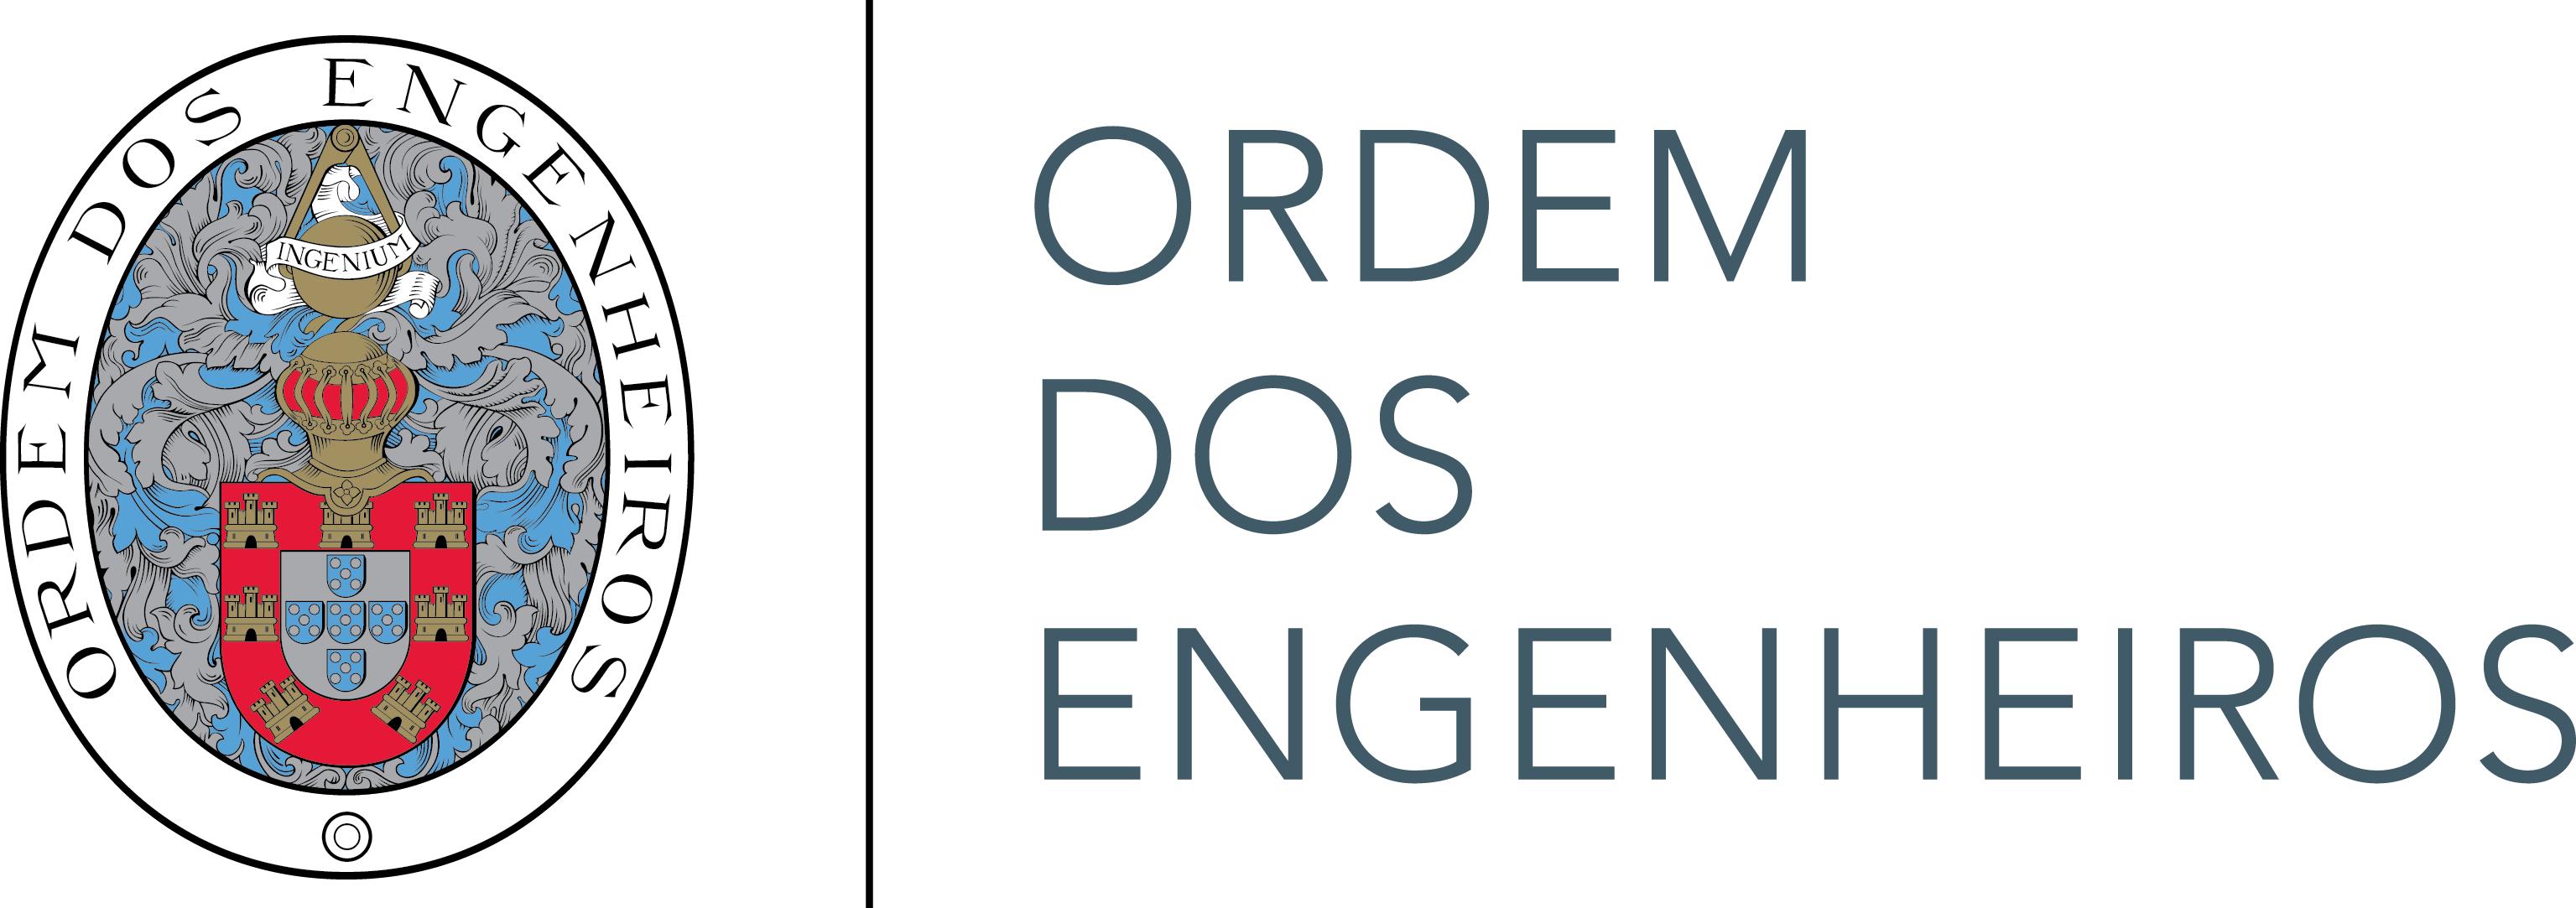 Ordem dos Engenheiros Logo photo - 1